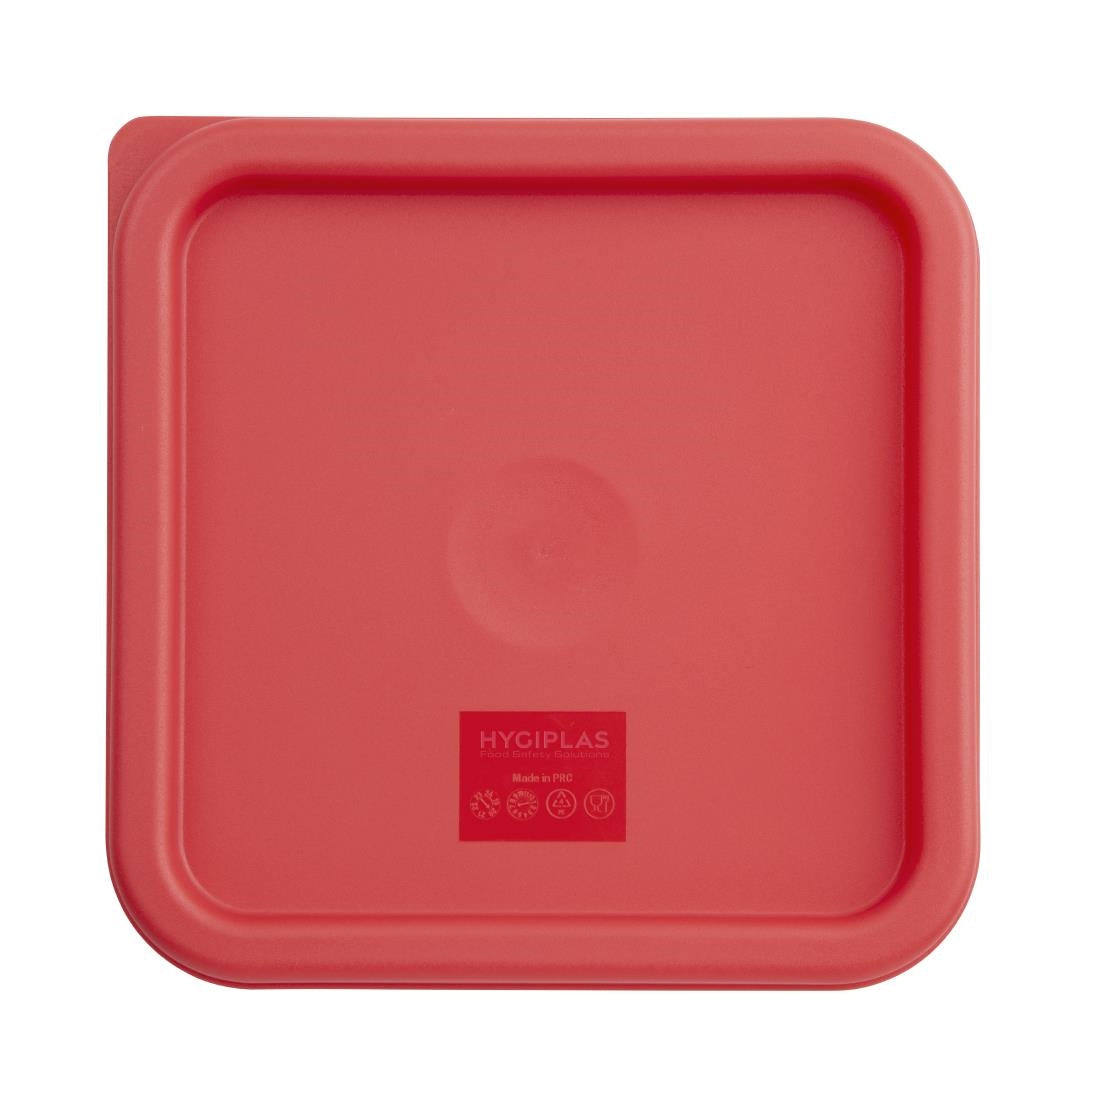 CF041 Vogue Square Food Storage Container Lid Red Medium